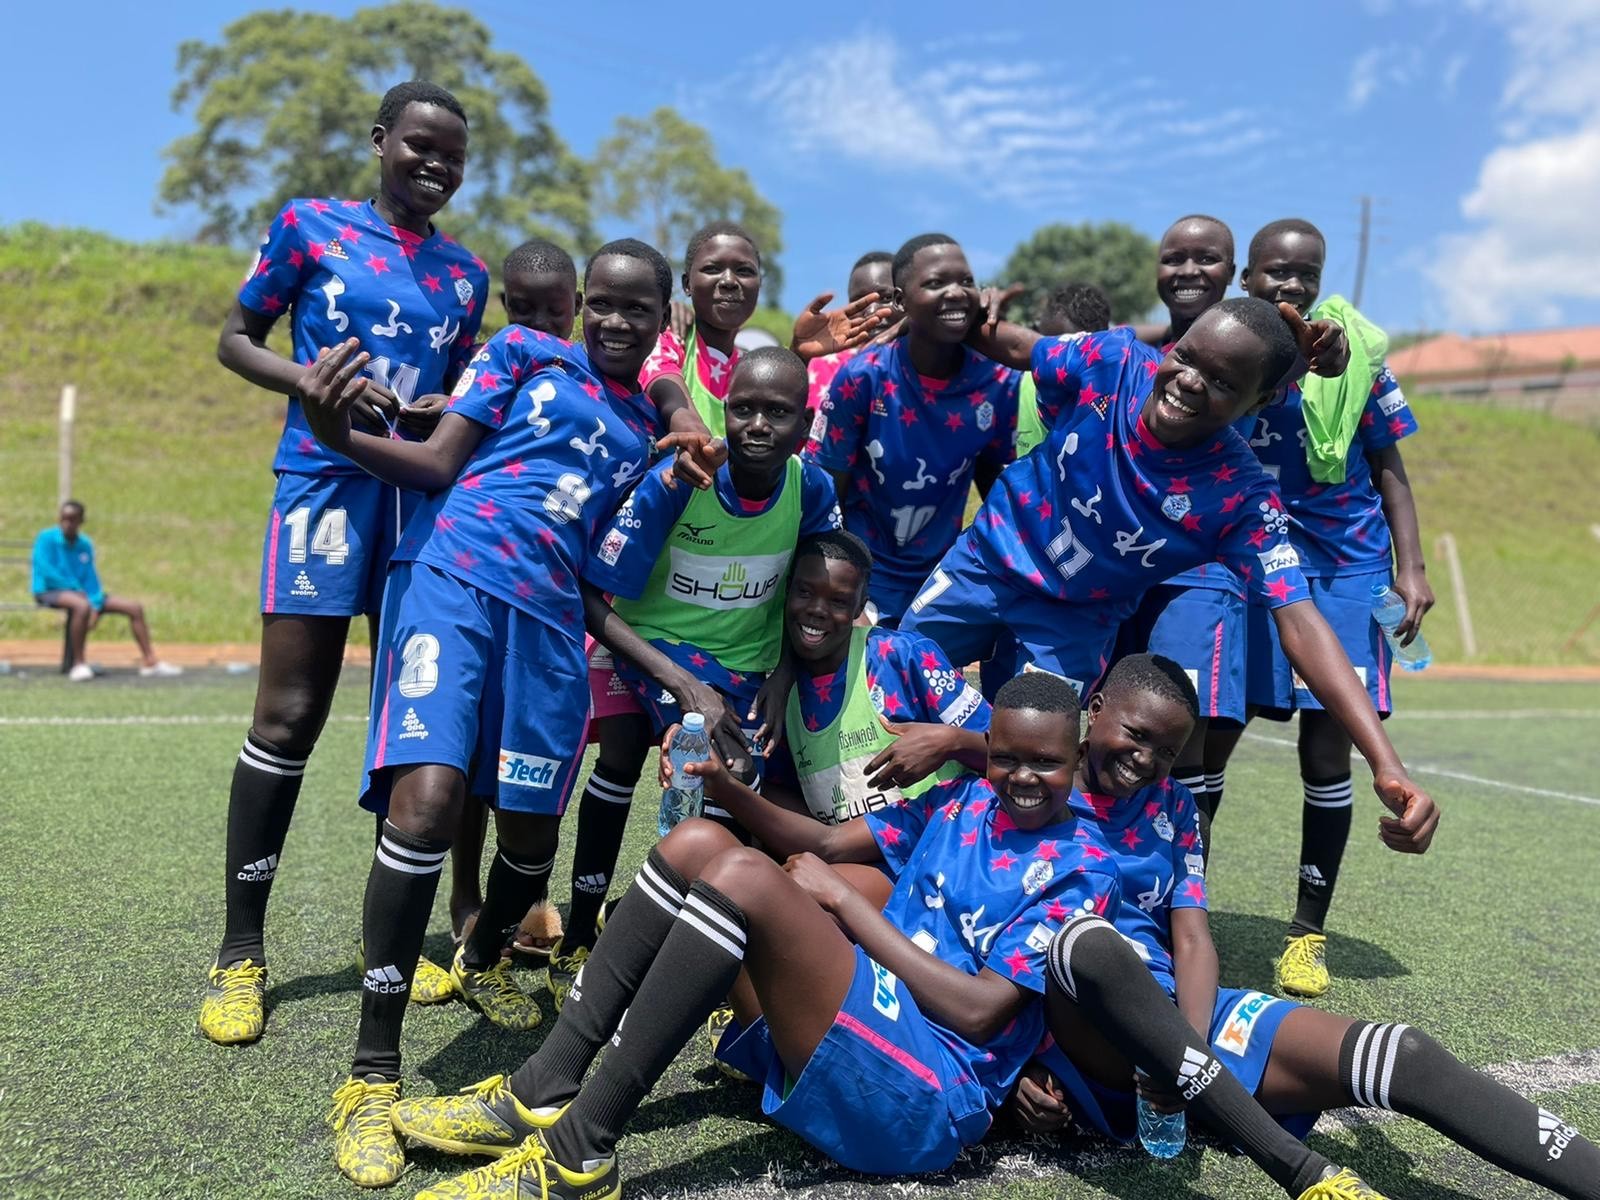 22 23 Weリーグカップ決勝会場にて ウガンダ女子サッカーチームに寄贈するサッカー用具募集 Weリーグ Women Empowerment League